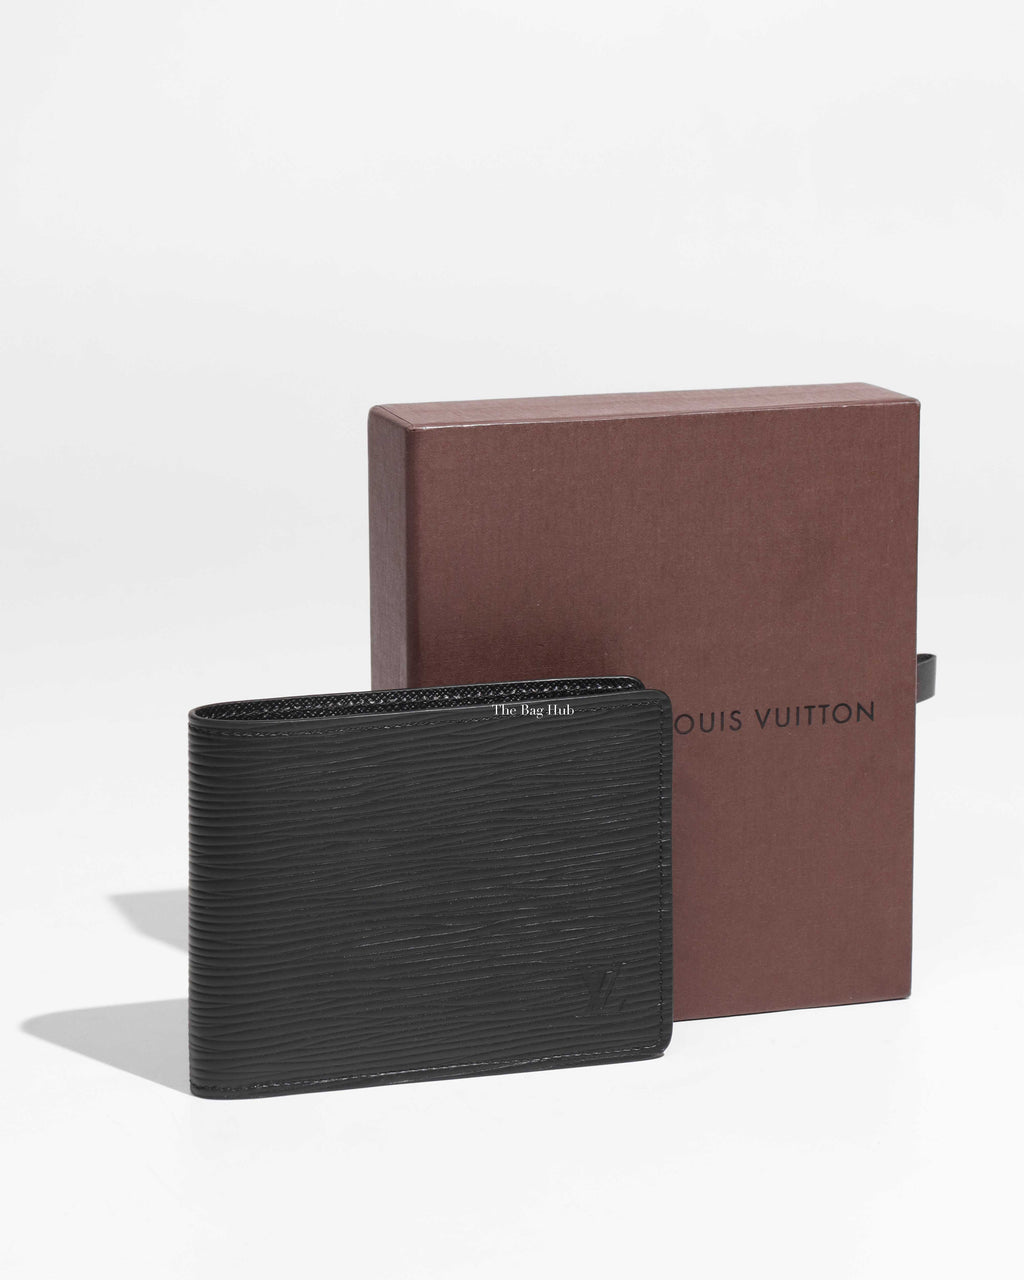 LV Pochette COUSSIN Unboxing Garden Collection & COMPARISONS WOC Louis  Vuitton #luxurypl38 